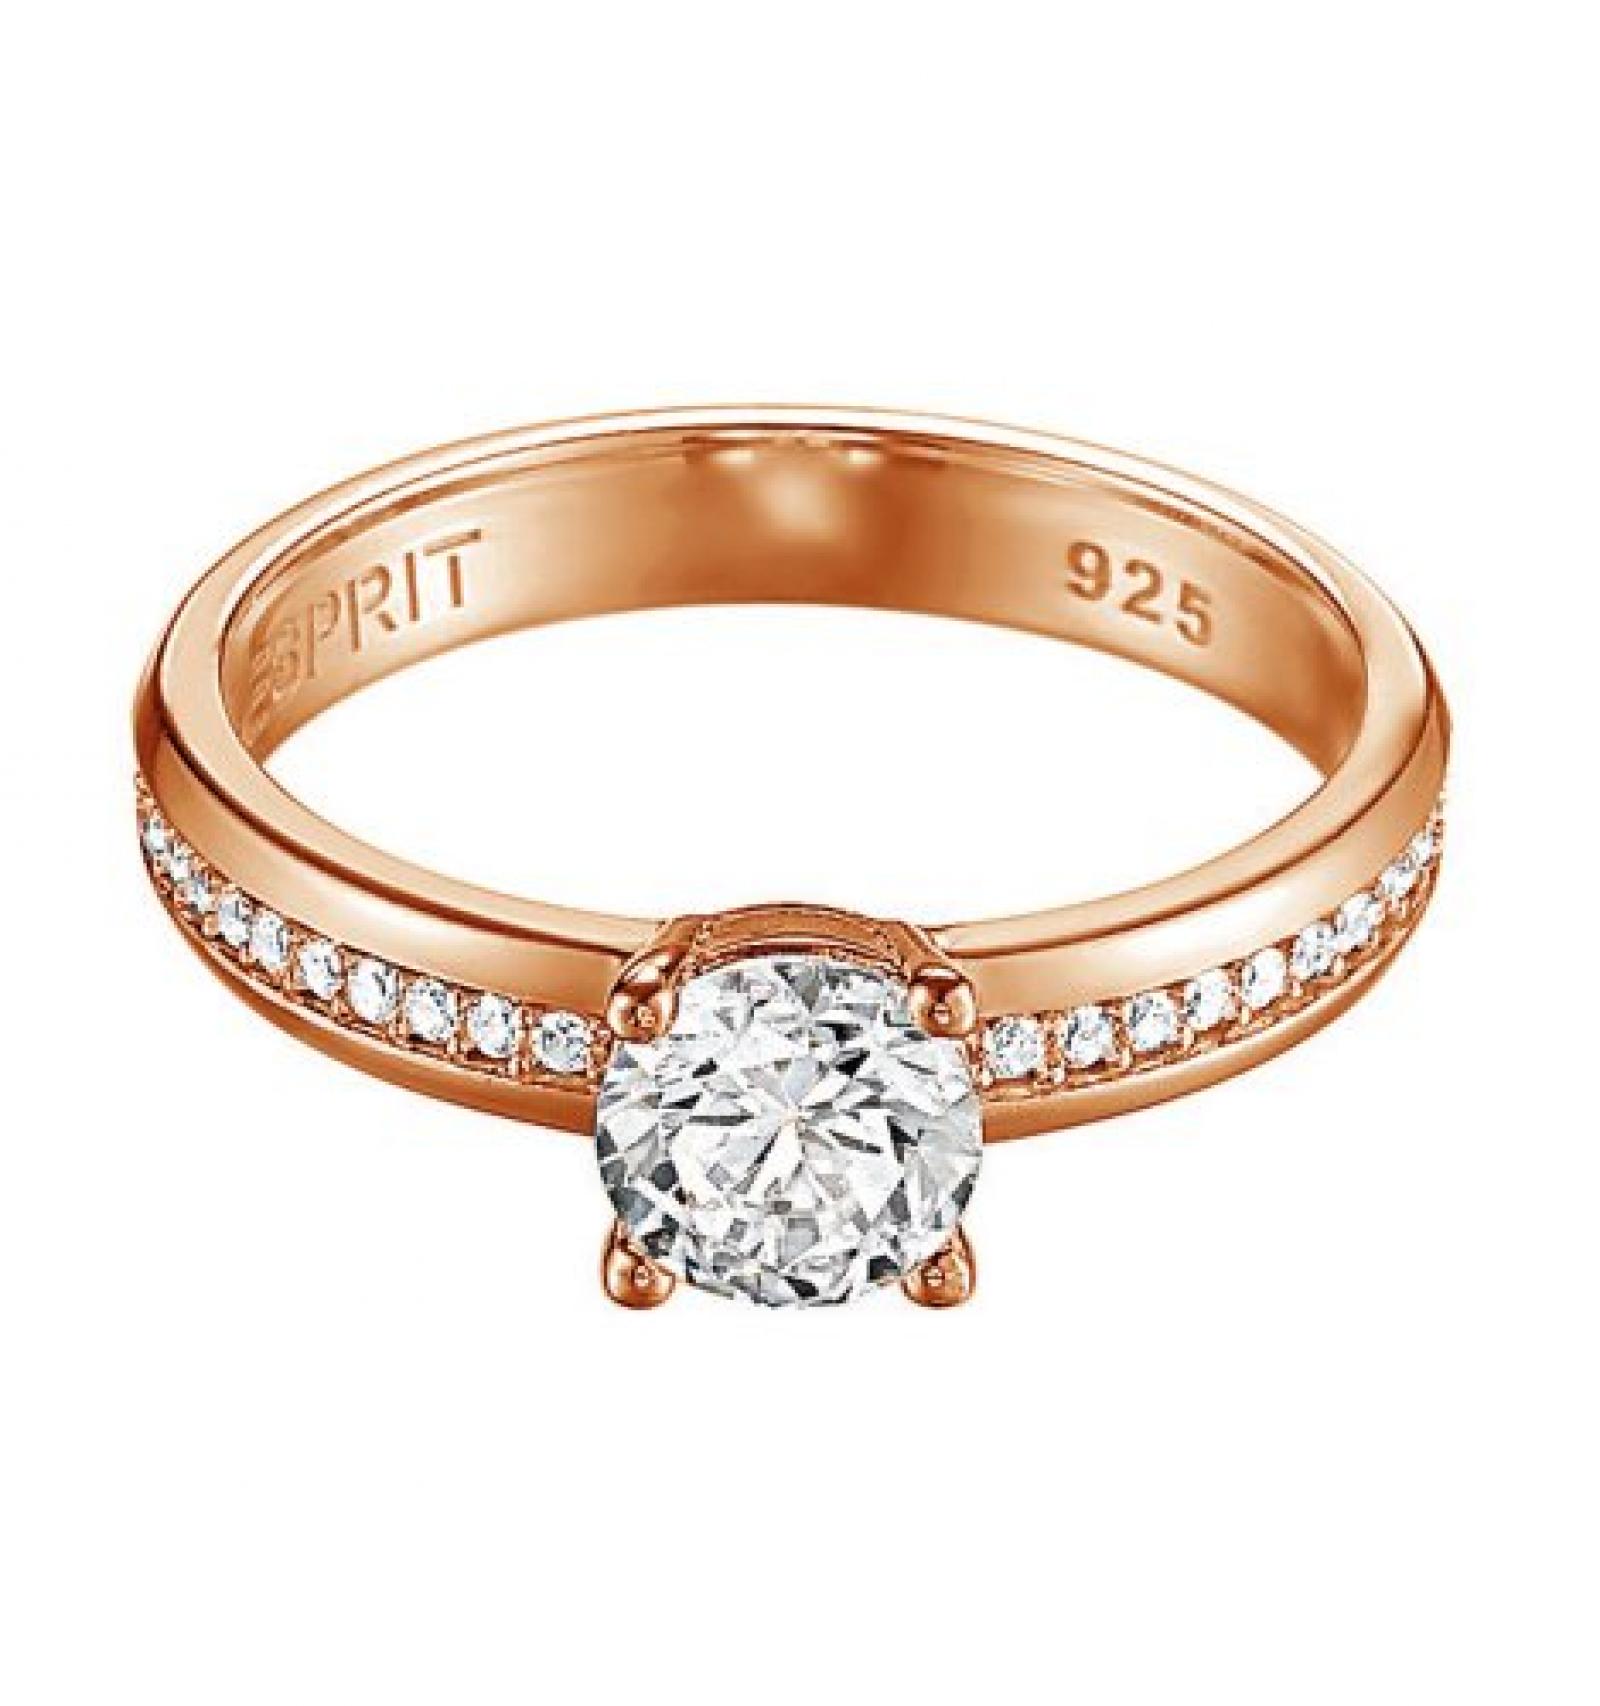 Esprit Jewels Damen-Ring 925 Sterling Silber grace glam rose ESRG91609C1 